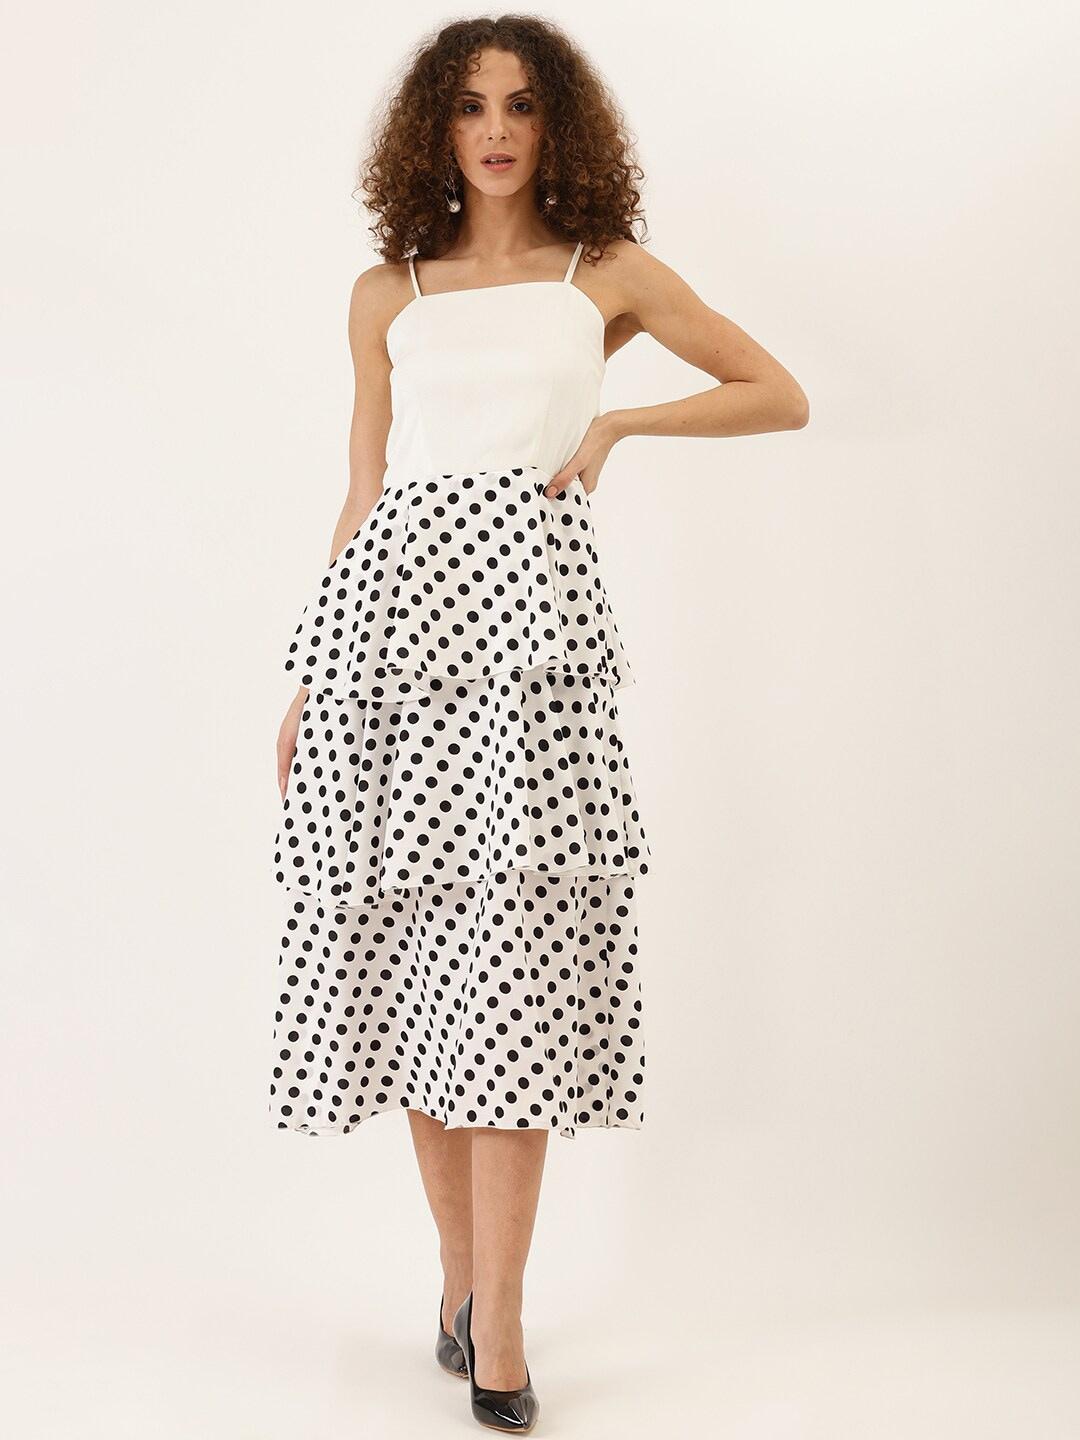 dodo-&-moa-white-polka-dot-print-layered-crepe-fit-&-flare-midi-dress